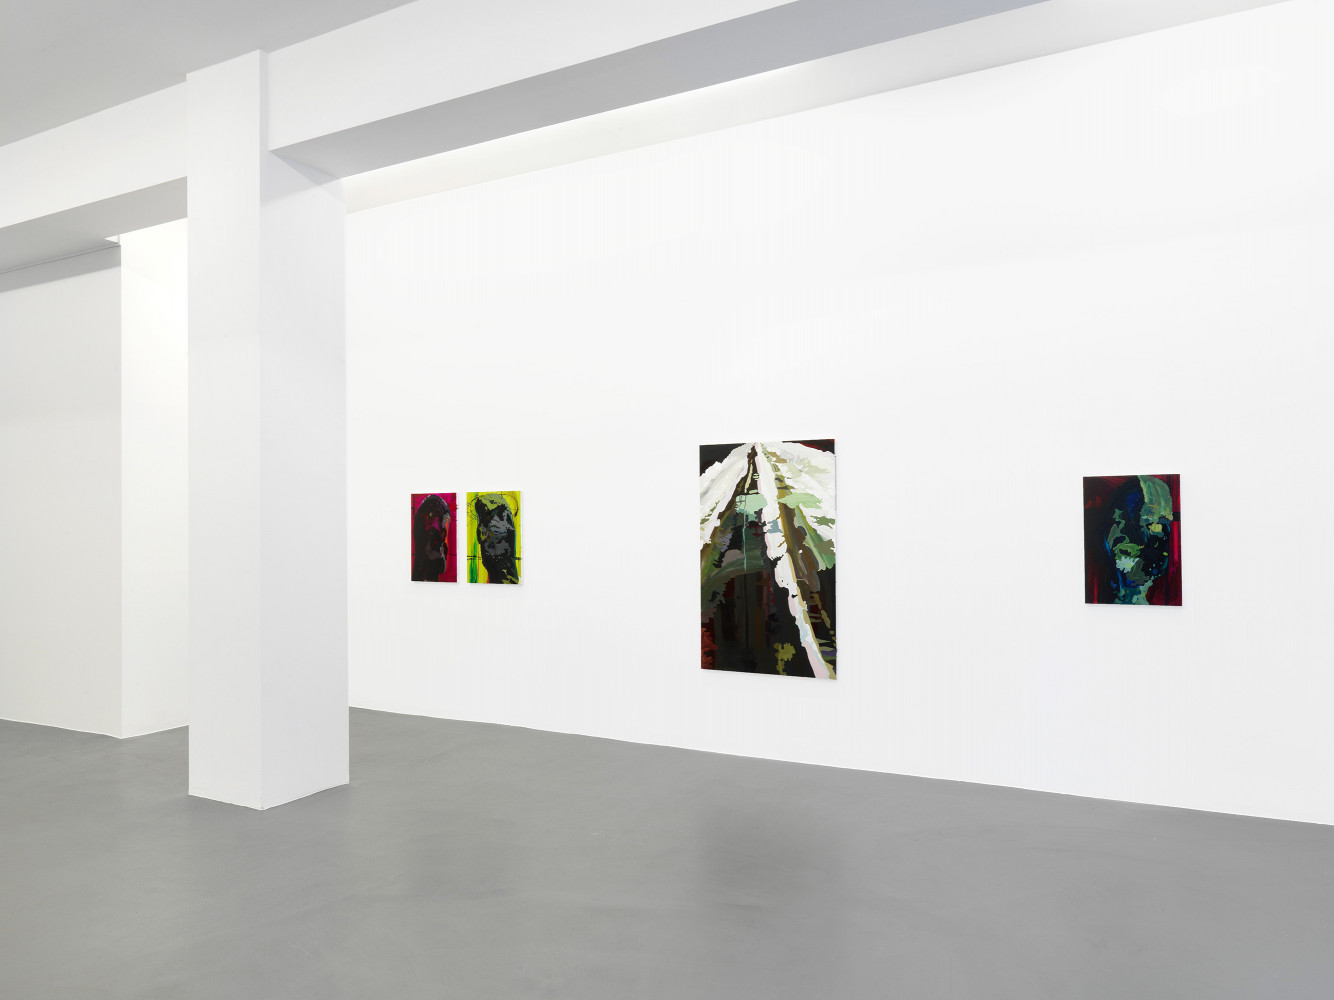 Clare Woods, ‘The Dark Matter’, Installationsansicht, Buchmann Galerie, 2012